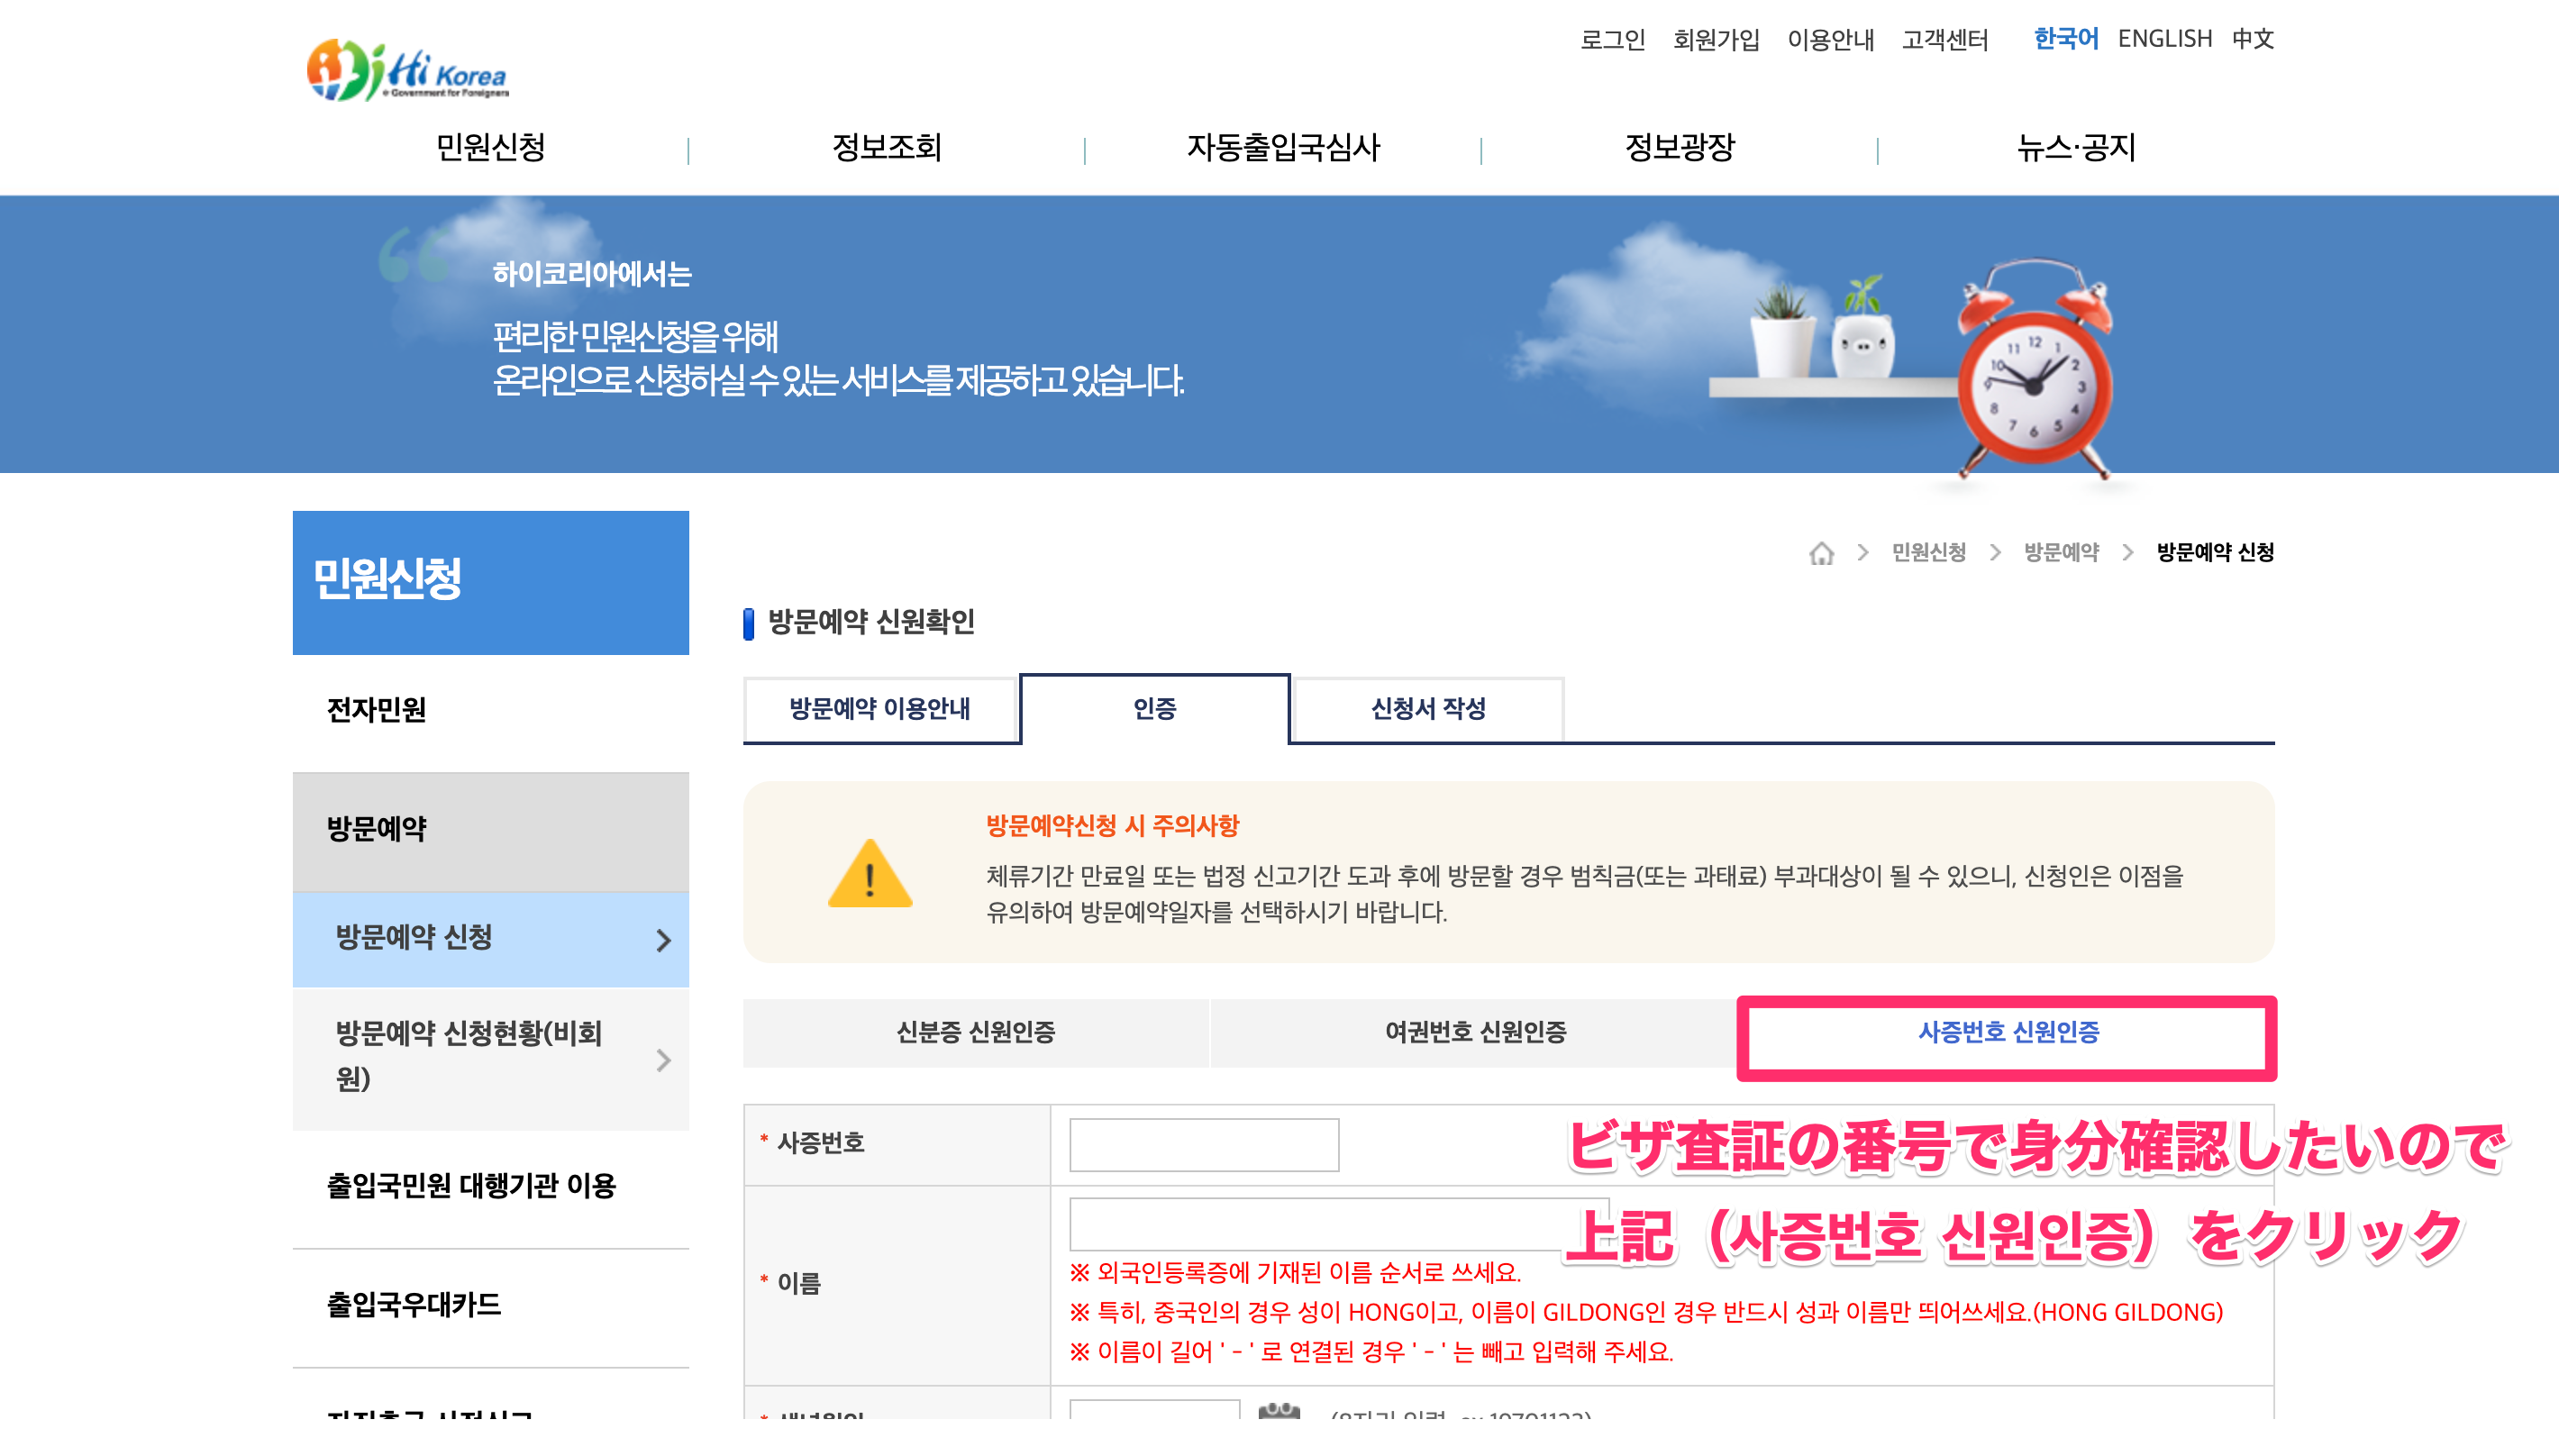 ハイコリア（Hi Korea）で出入国管理事務所への訪問予約をする方法（韓国で外国人登録証の作成を申請するための事前準備）